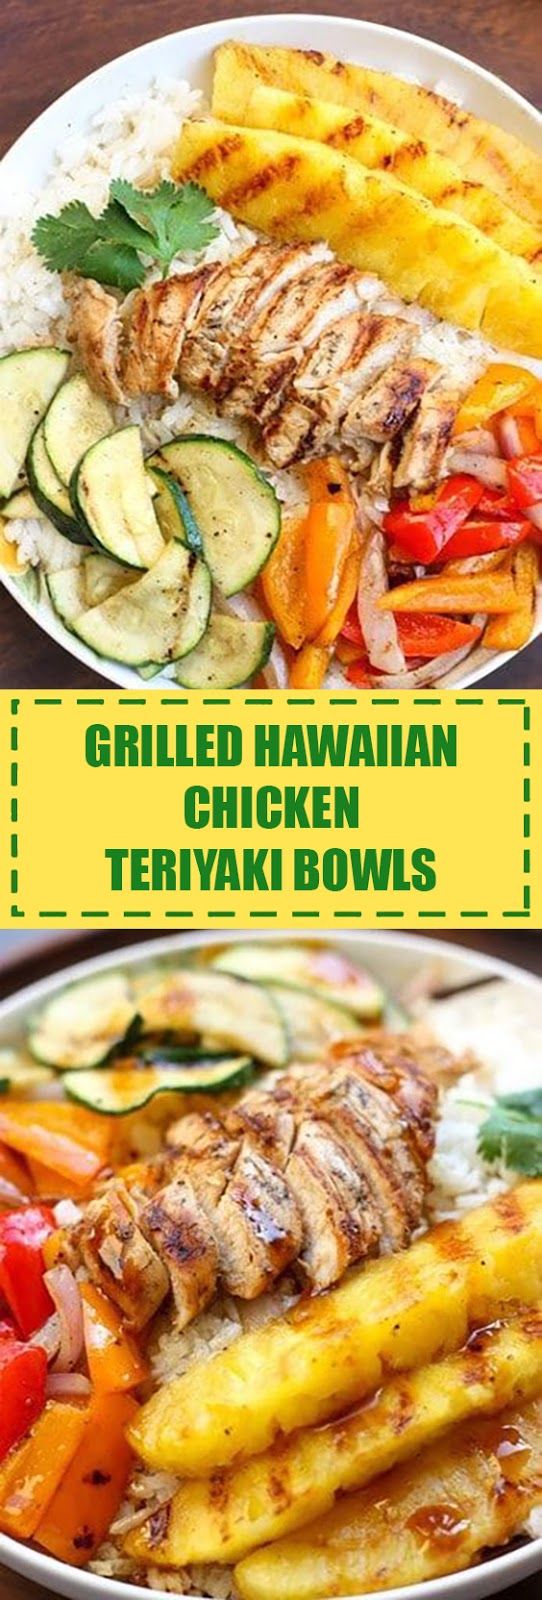 Grilled Hawaiian Chicken Teriyaki Bowls